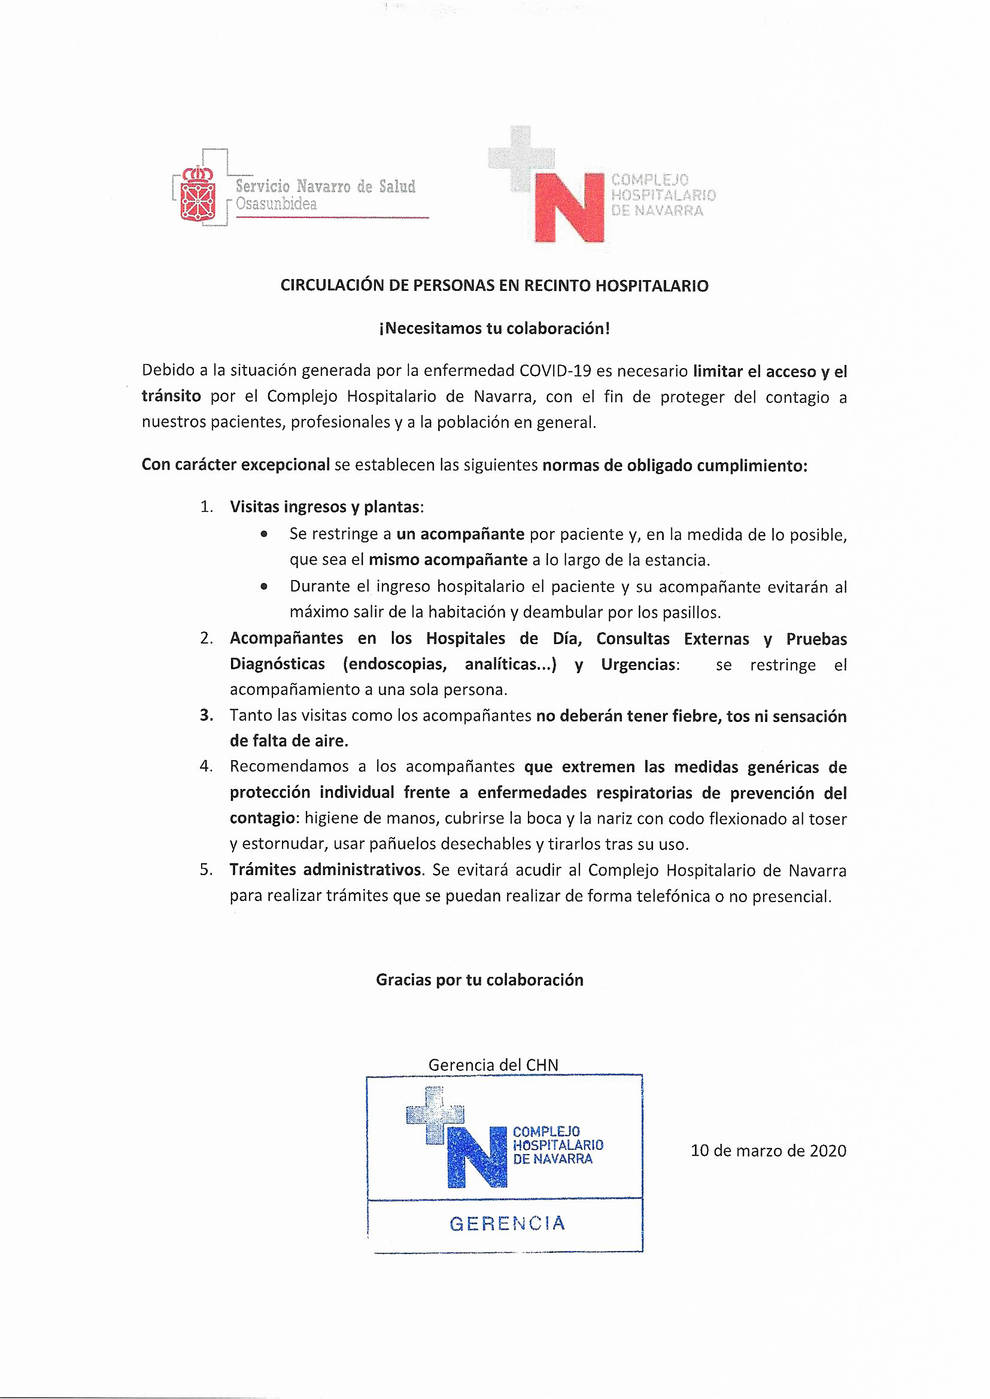 Medidas para frenar el coronavirus en el Complejo Hospitalario de Navarra